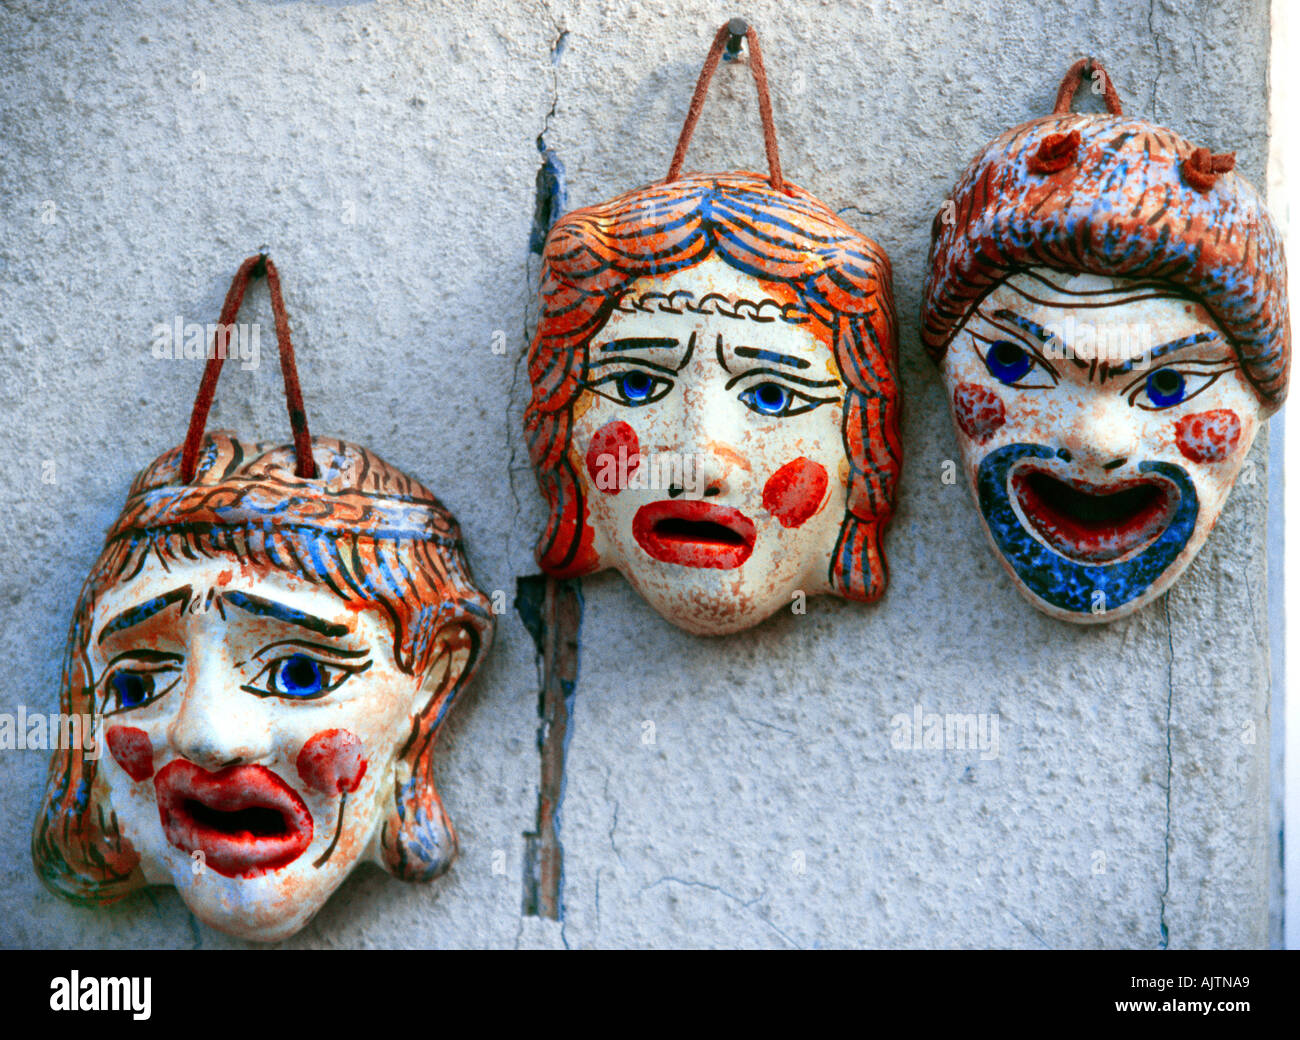 Griechische Theater Schauspieler Masken Stockfotografie - Alamy